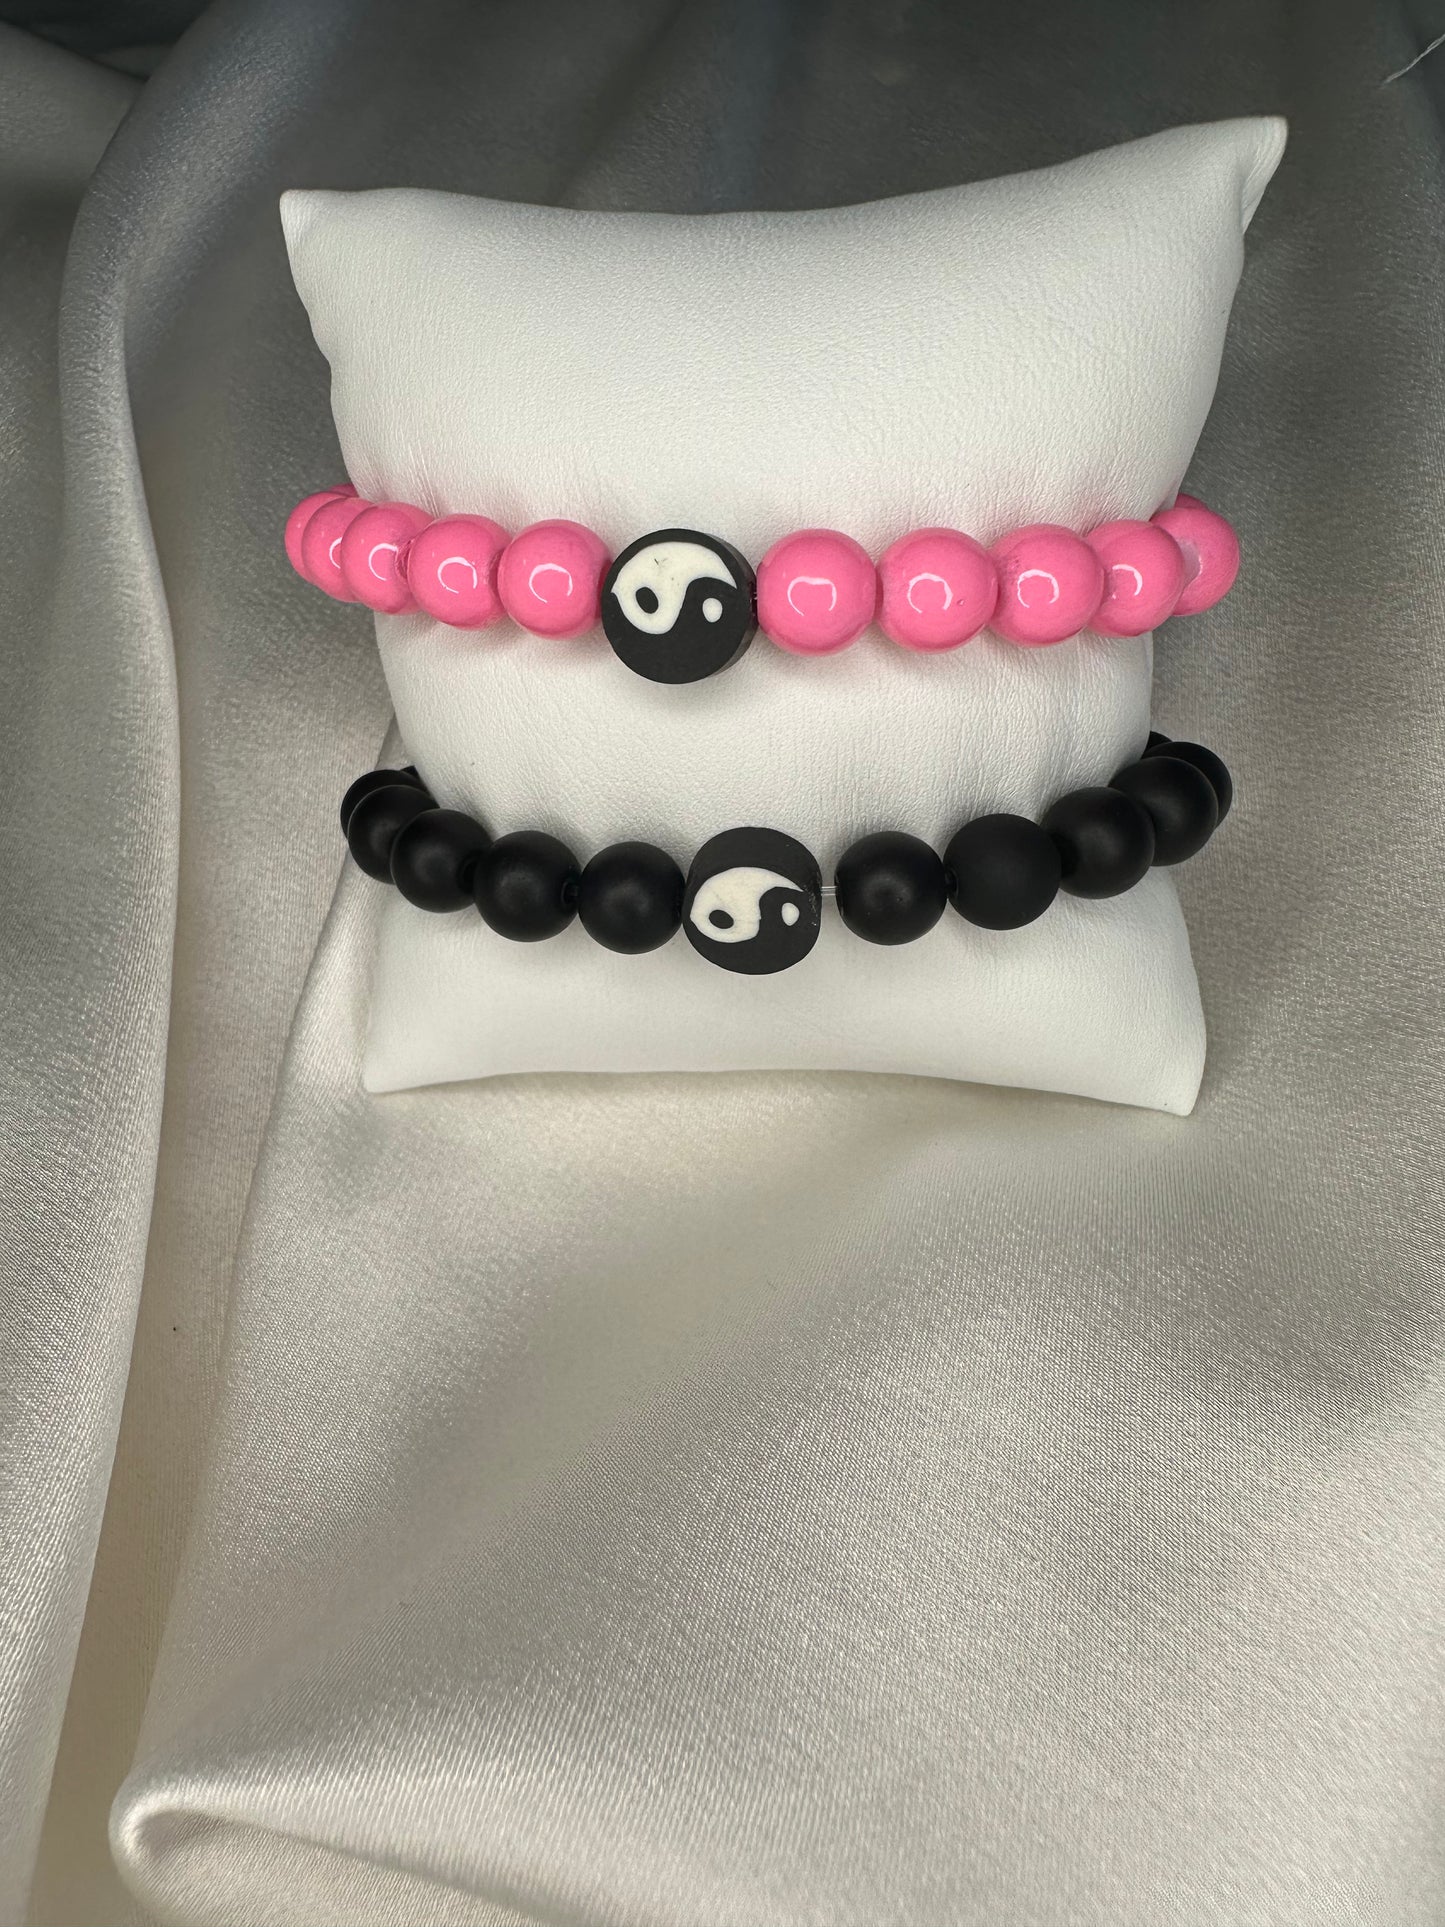 Yin and Yang matching bracelets